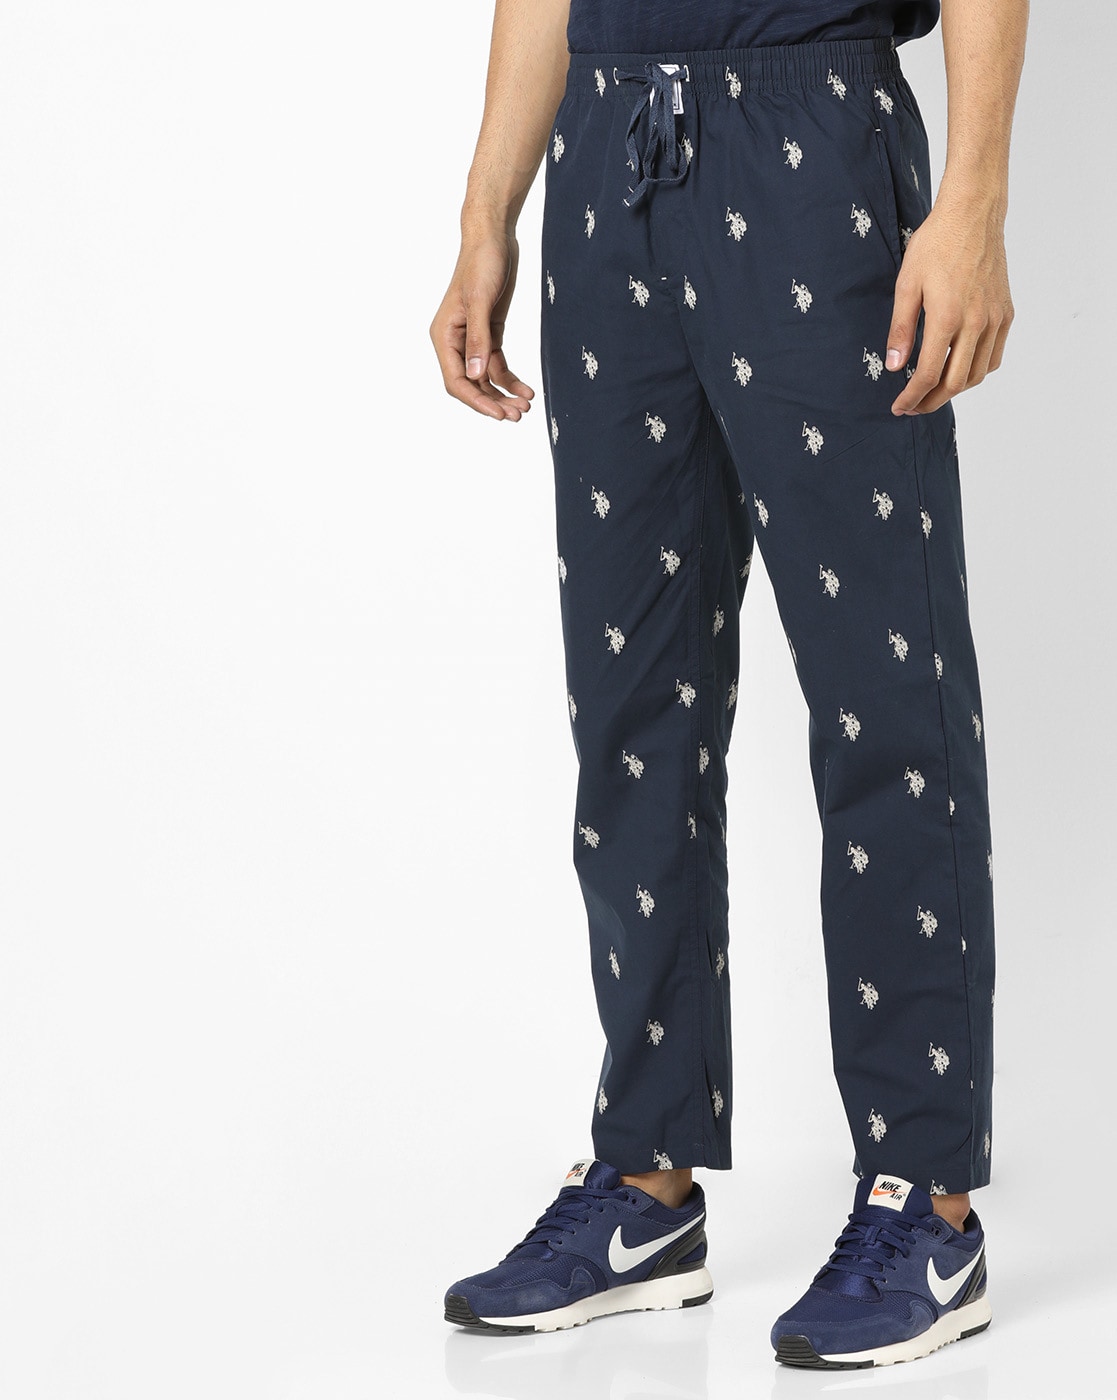 U.S Polo ASSN Men's Blue Fleece Lounge Pants NWT Pajama Sleep Size L Large